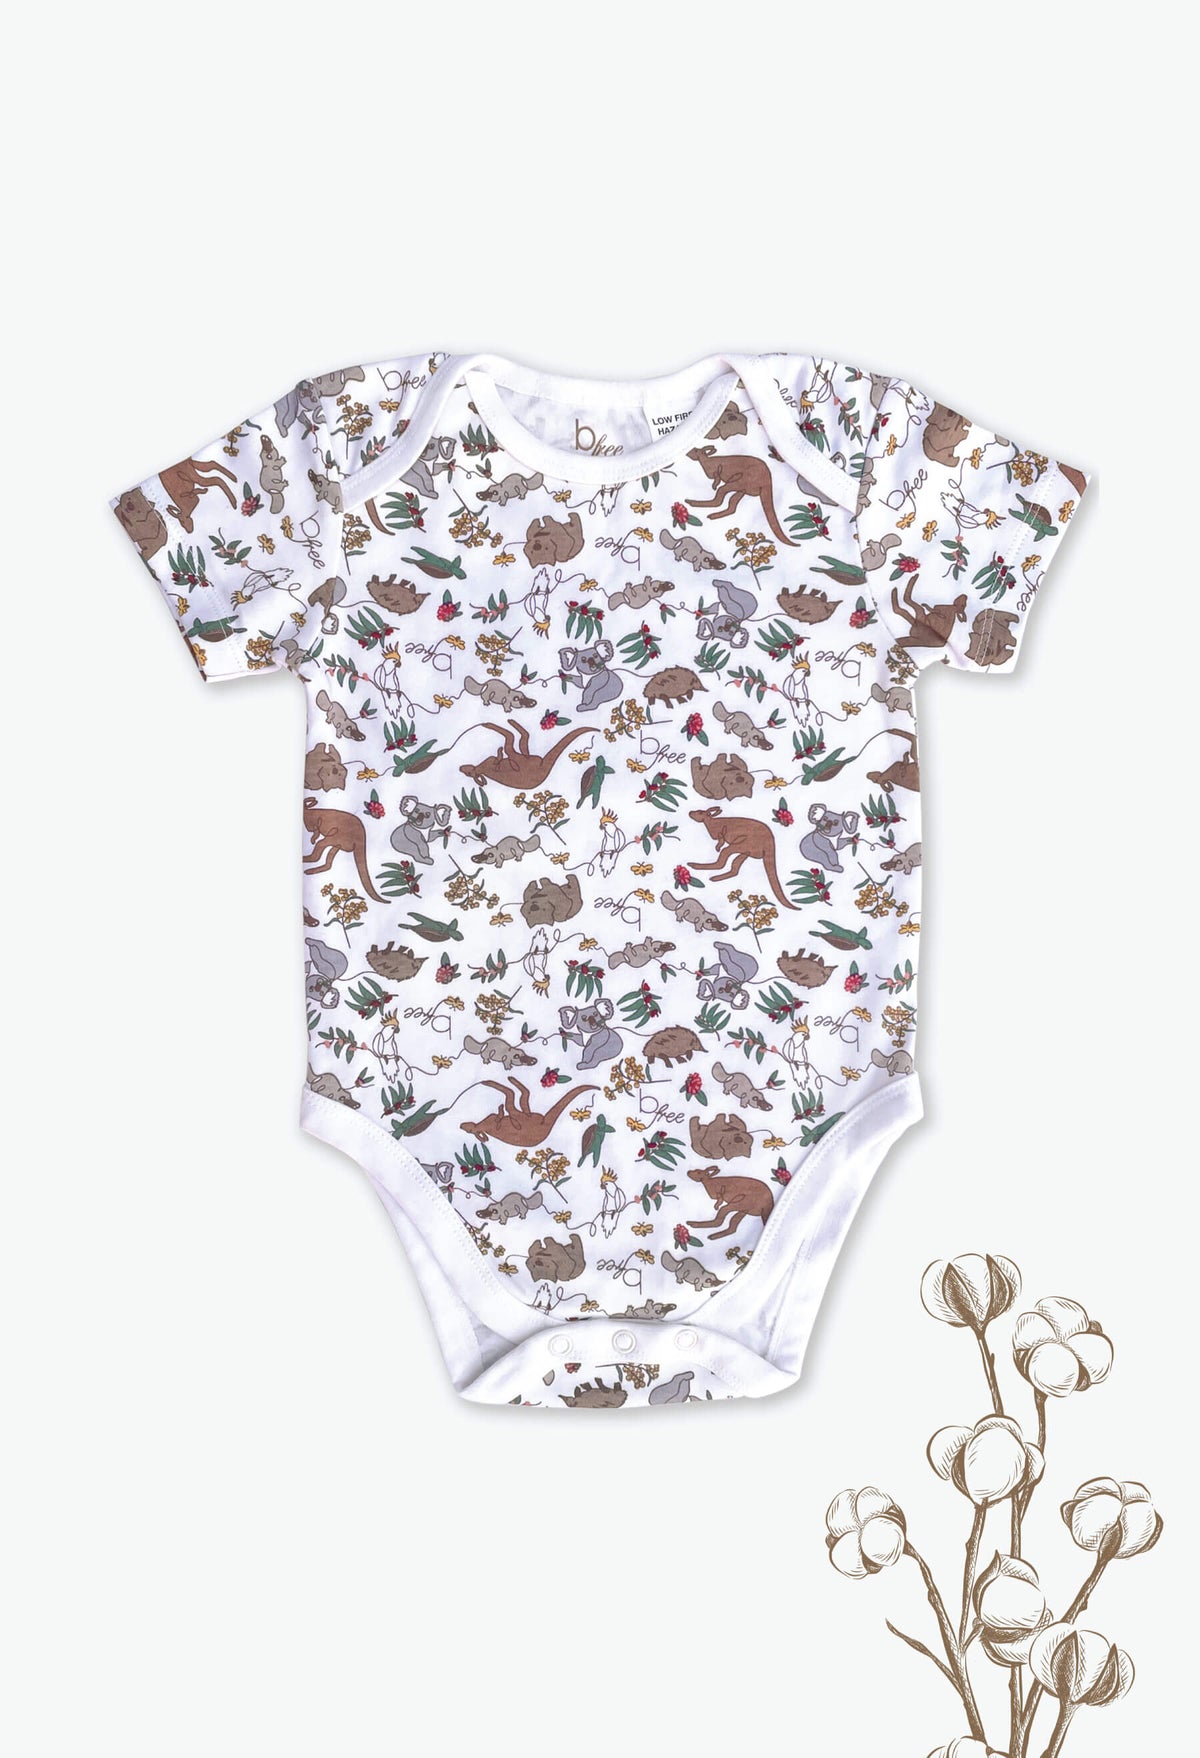 100% Organic Cotton Short Sleeve Baby Bodysuit - Native Aussie Animals